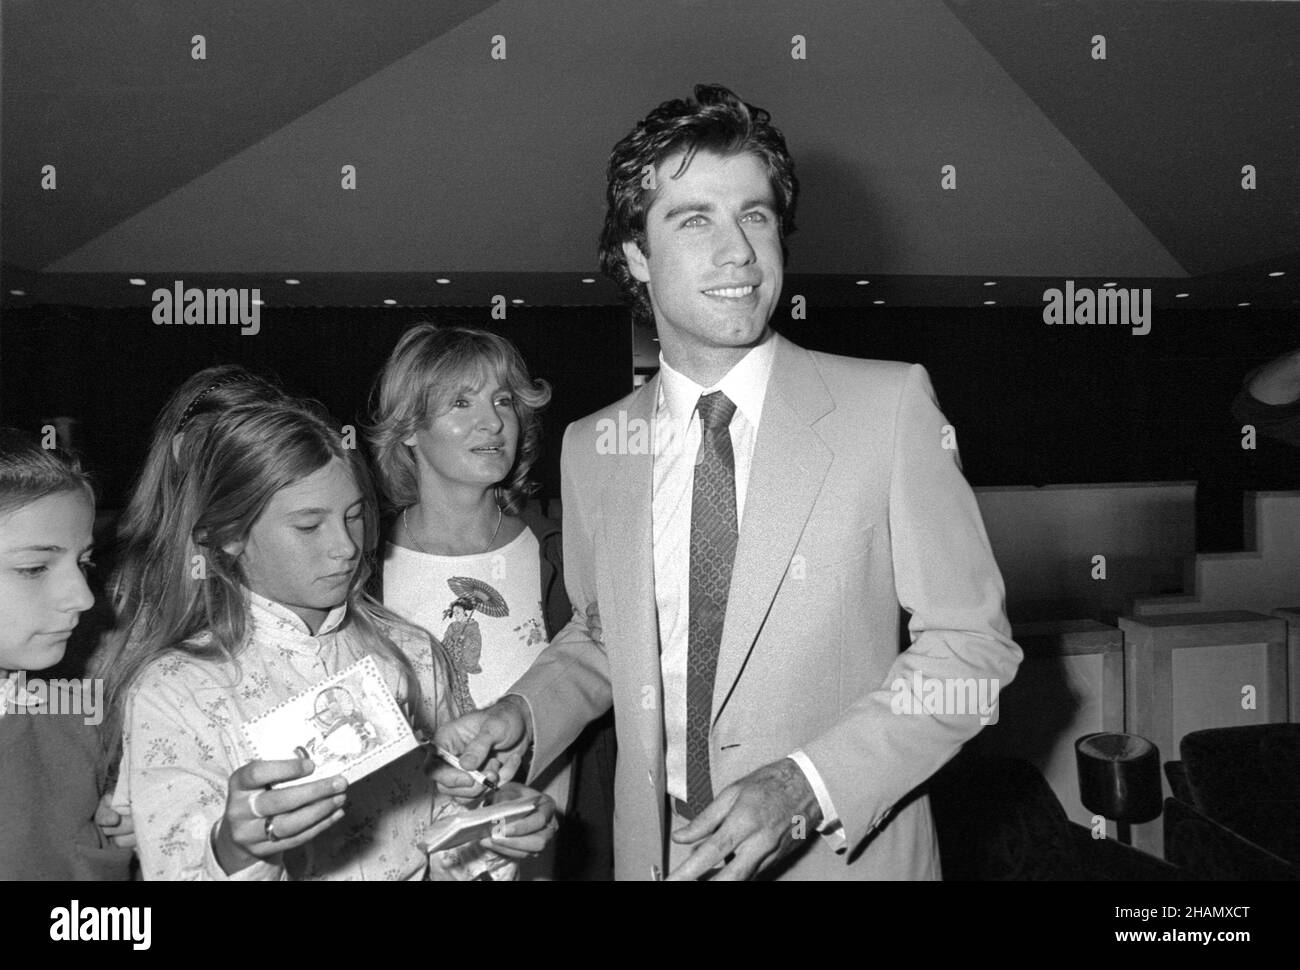 - l'acteur américain John Travolta signe des autographes au festival du film de Venise en 1981 - I'attore americano John Travolta firma autografi al festival del cinéma di Venezia del 1981 Banque D'Images